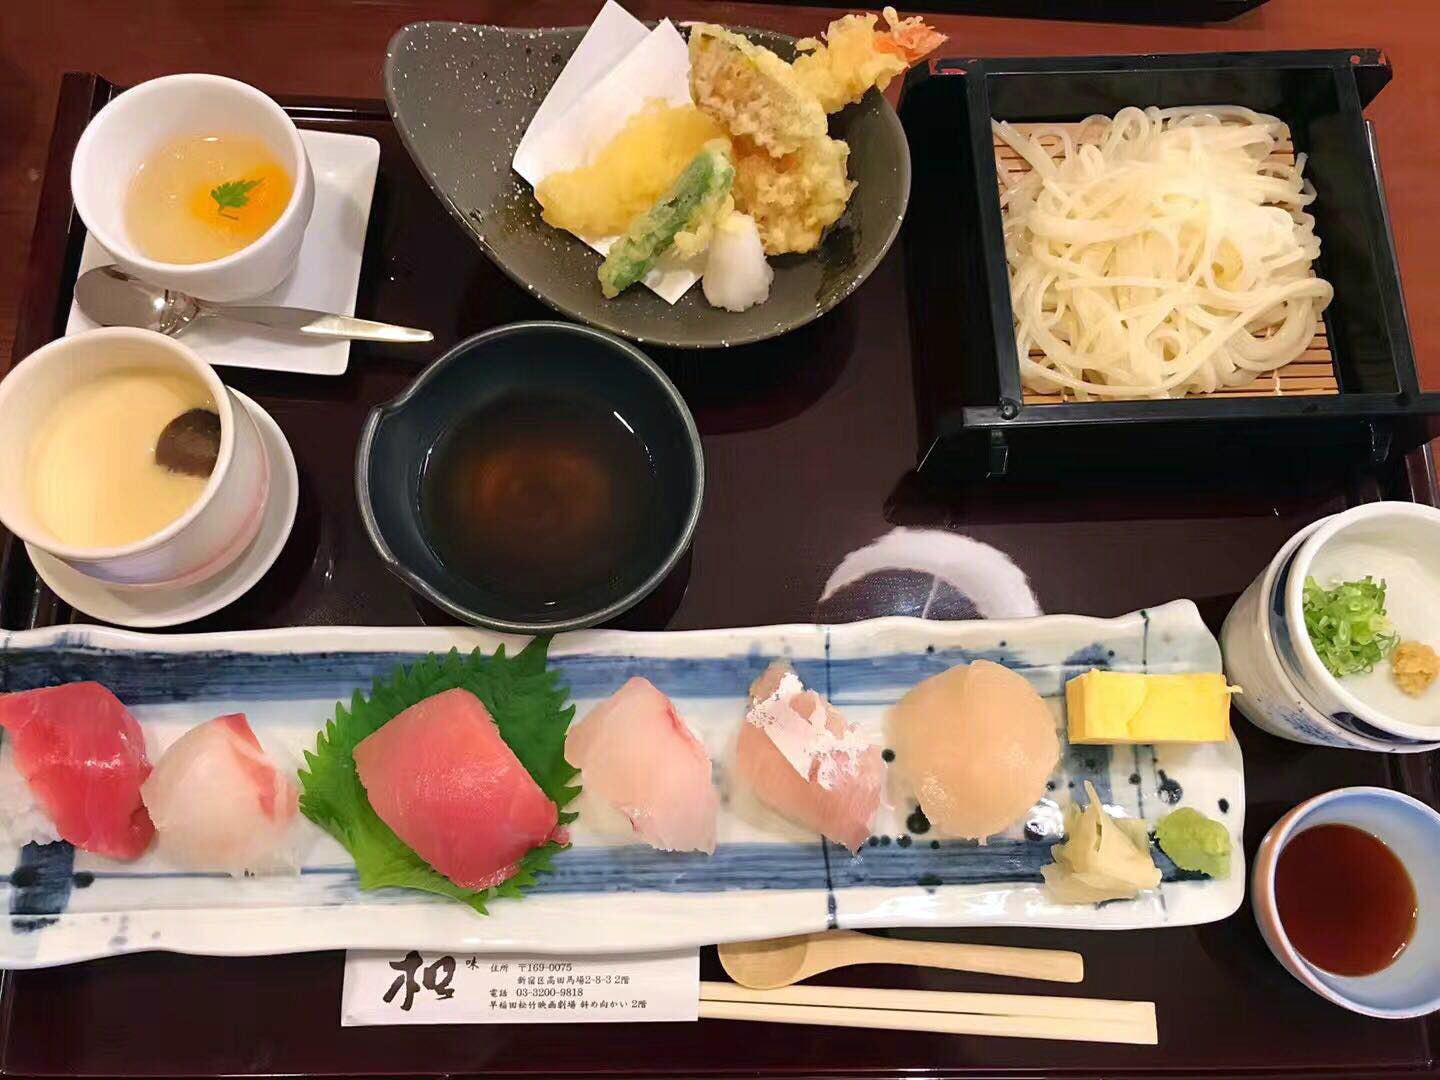 为什么日本料理味道如此清淡 客观日本